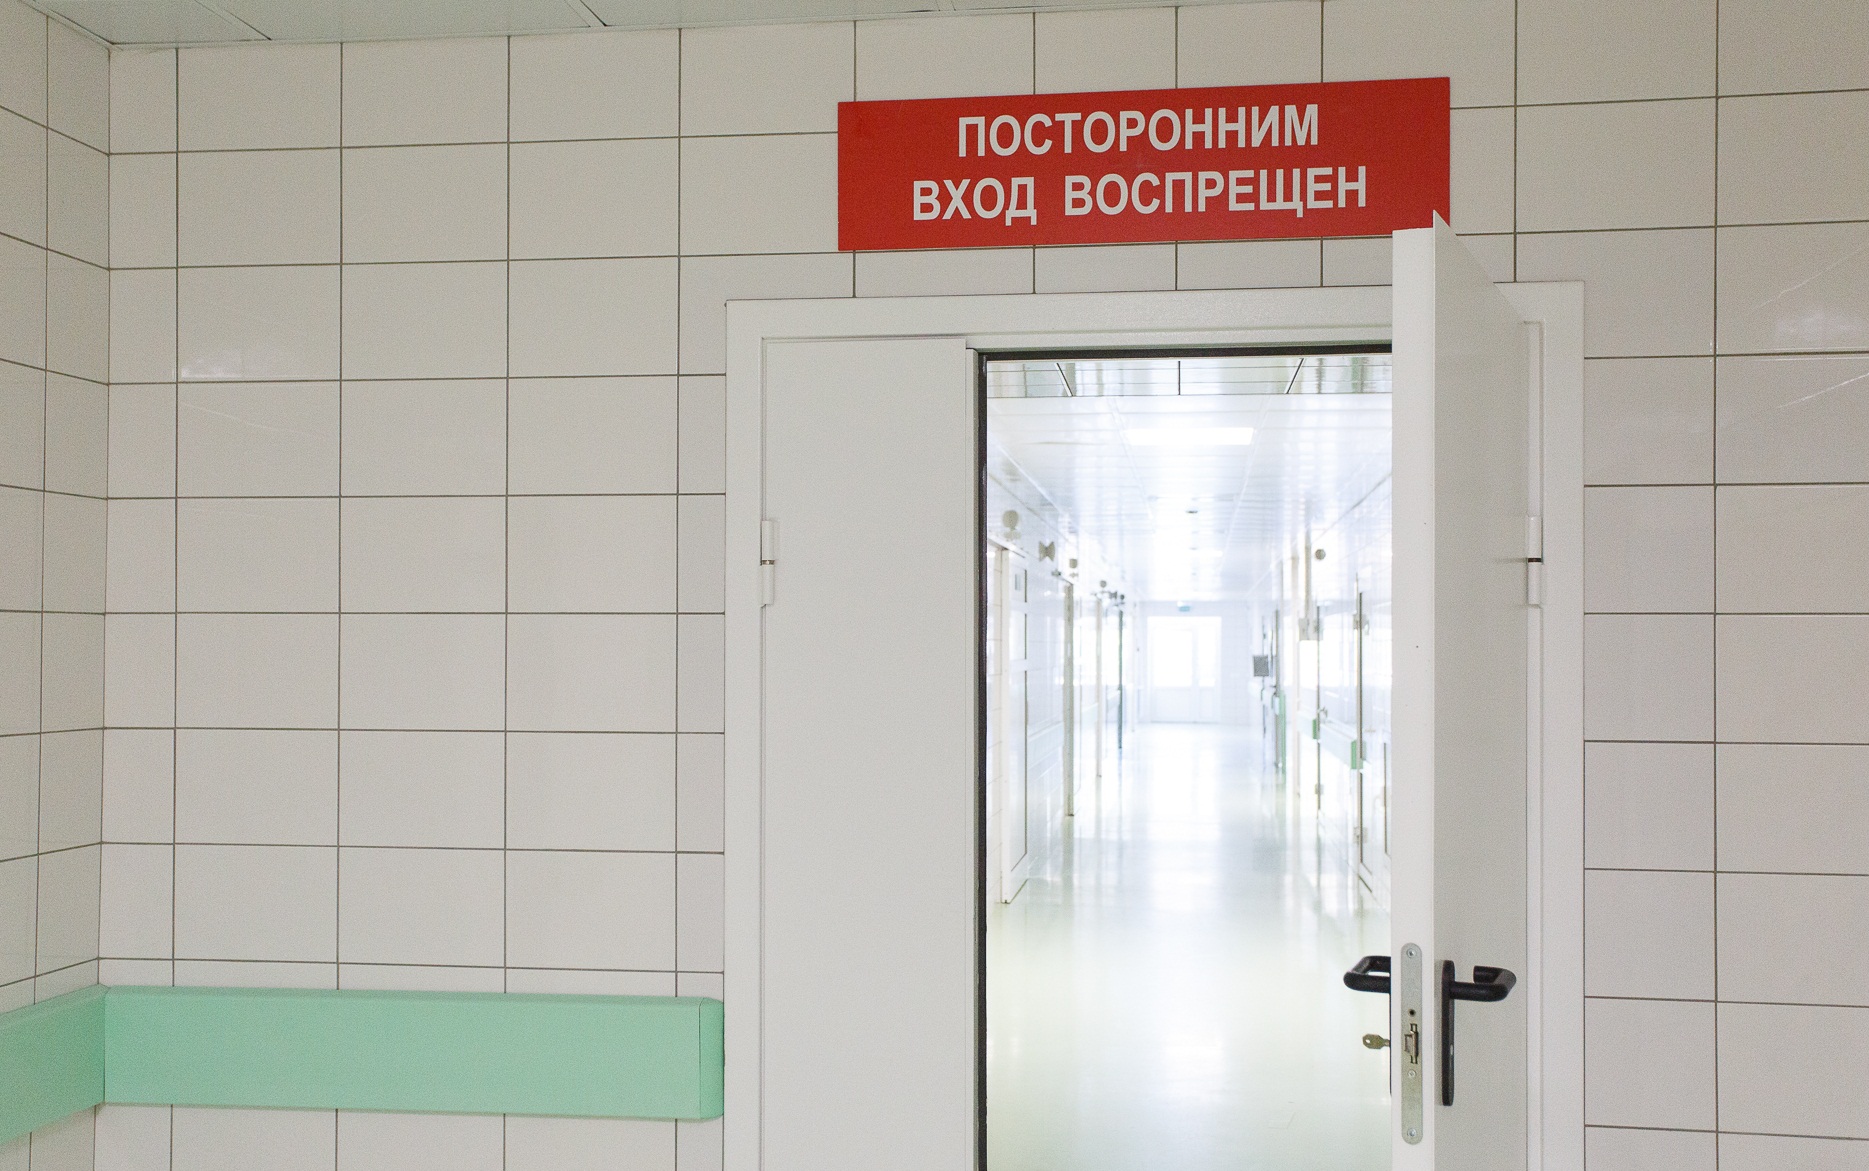 Детей тоже придется лечить: семьи из Астрахани и Чувашии не поделили дорогу в Волгоградской области